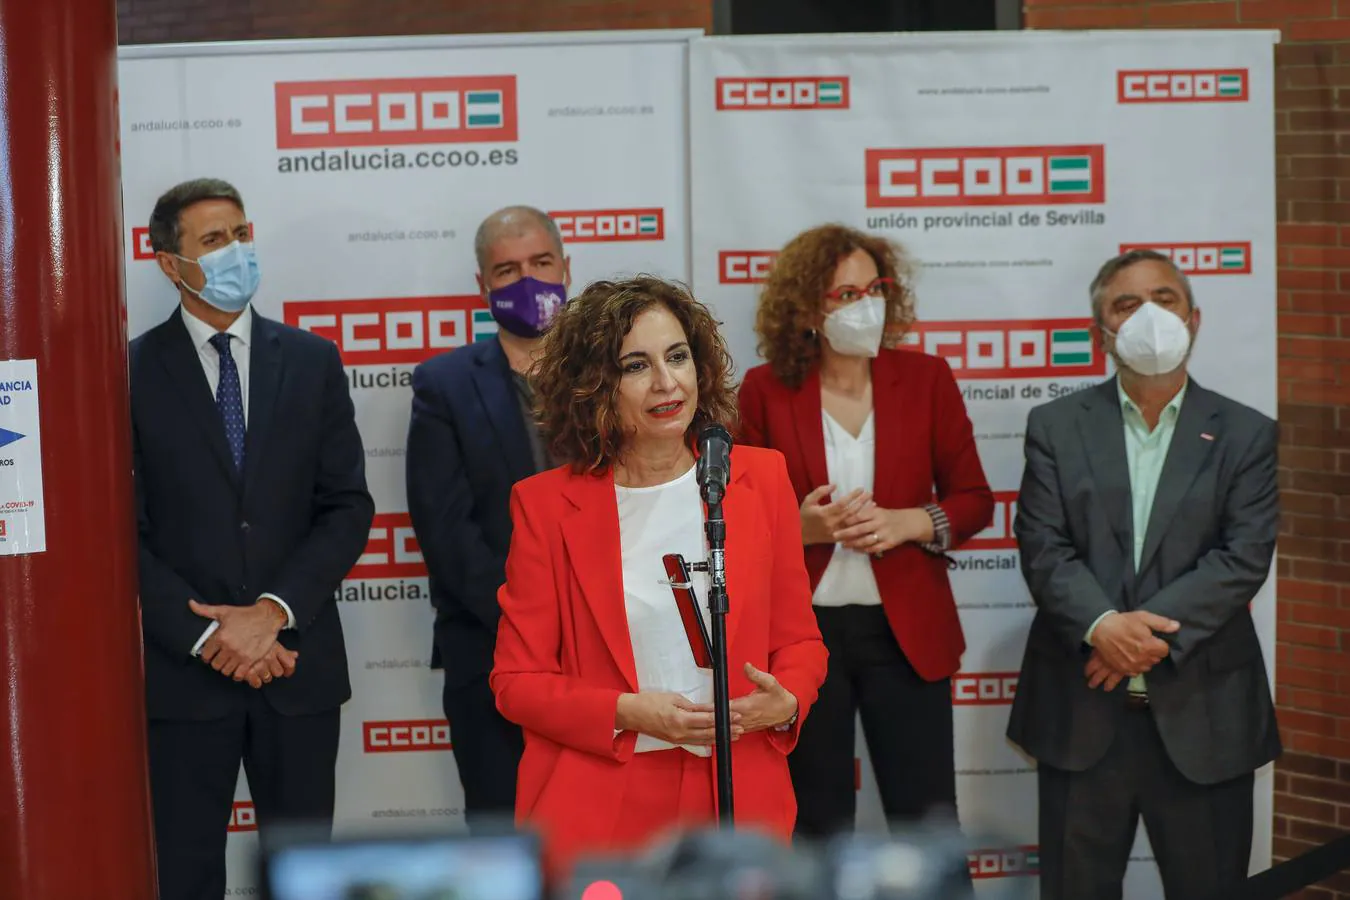 Inauguración de la nueva sede de CCOO en Sevilla